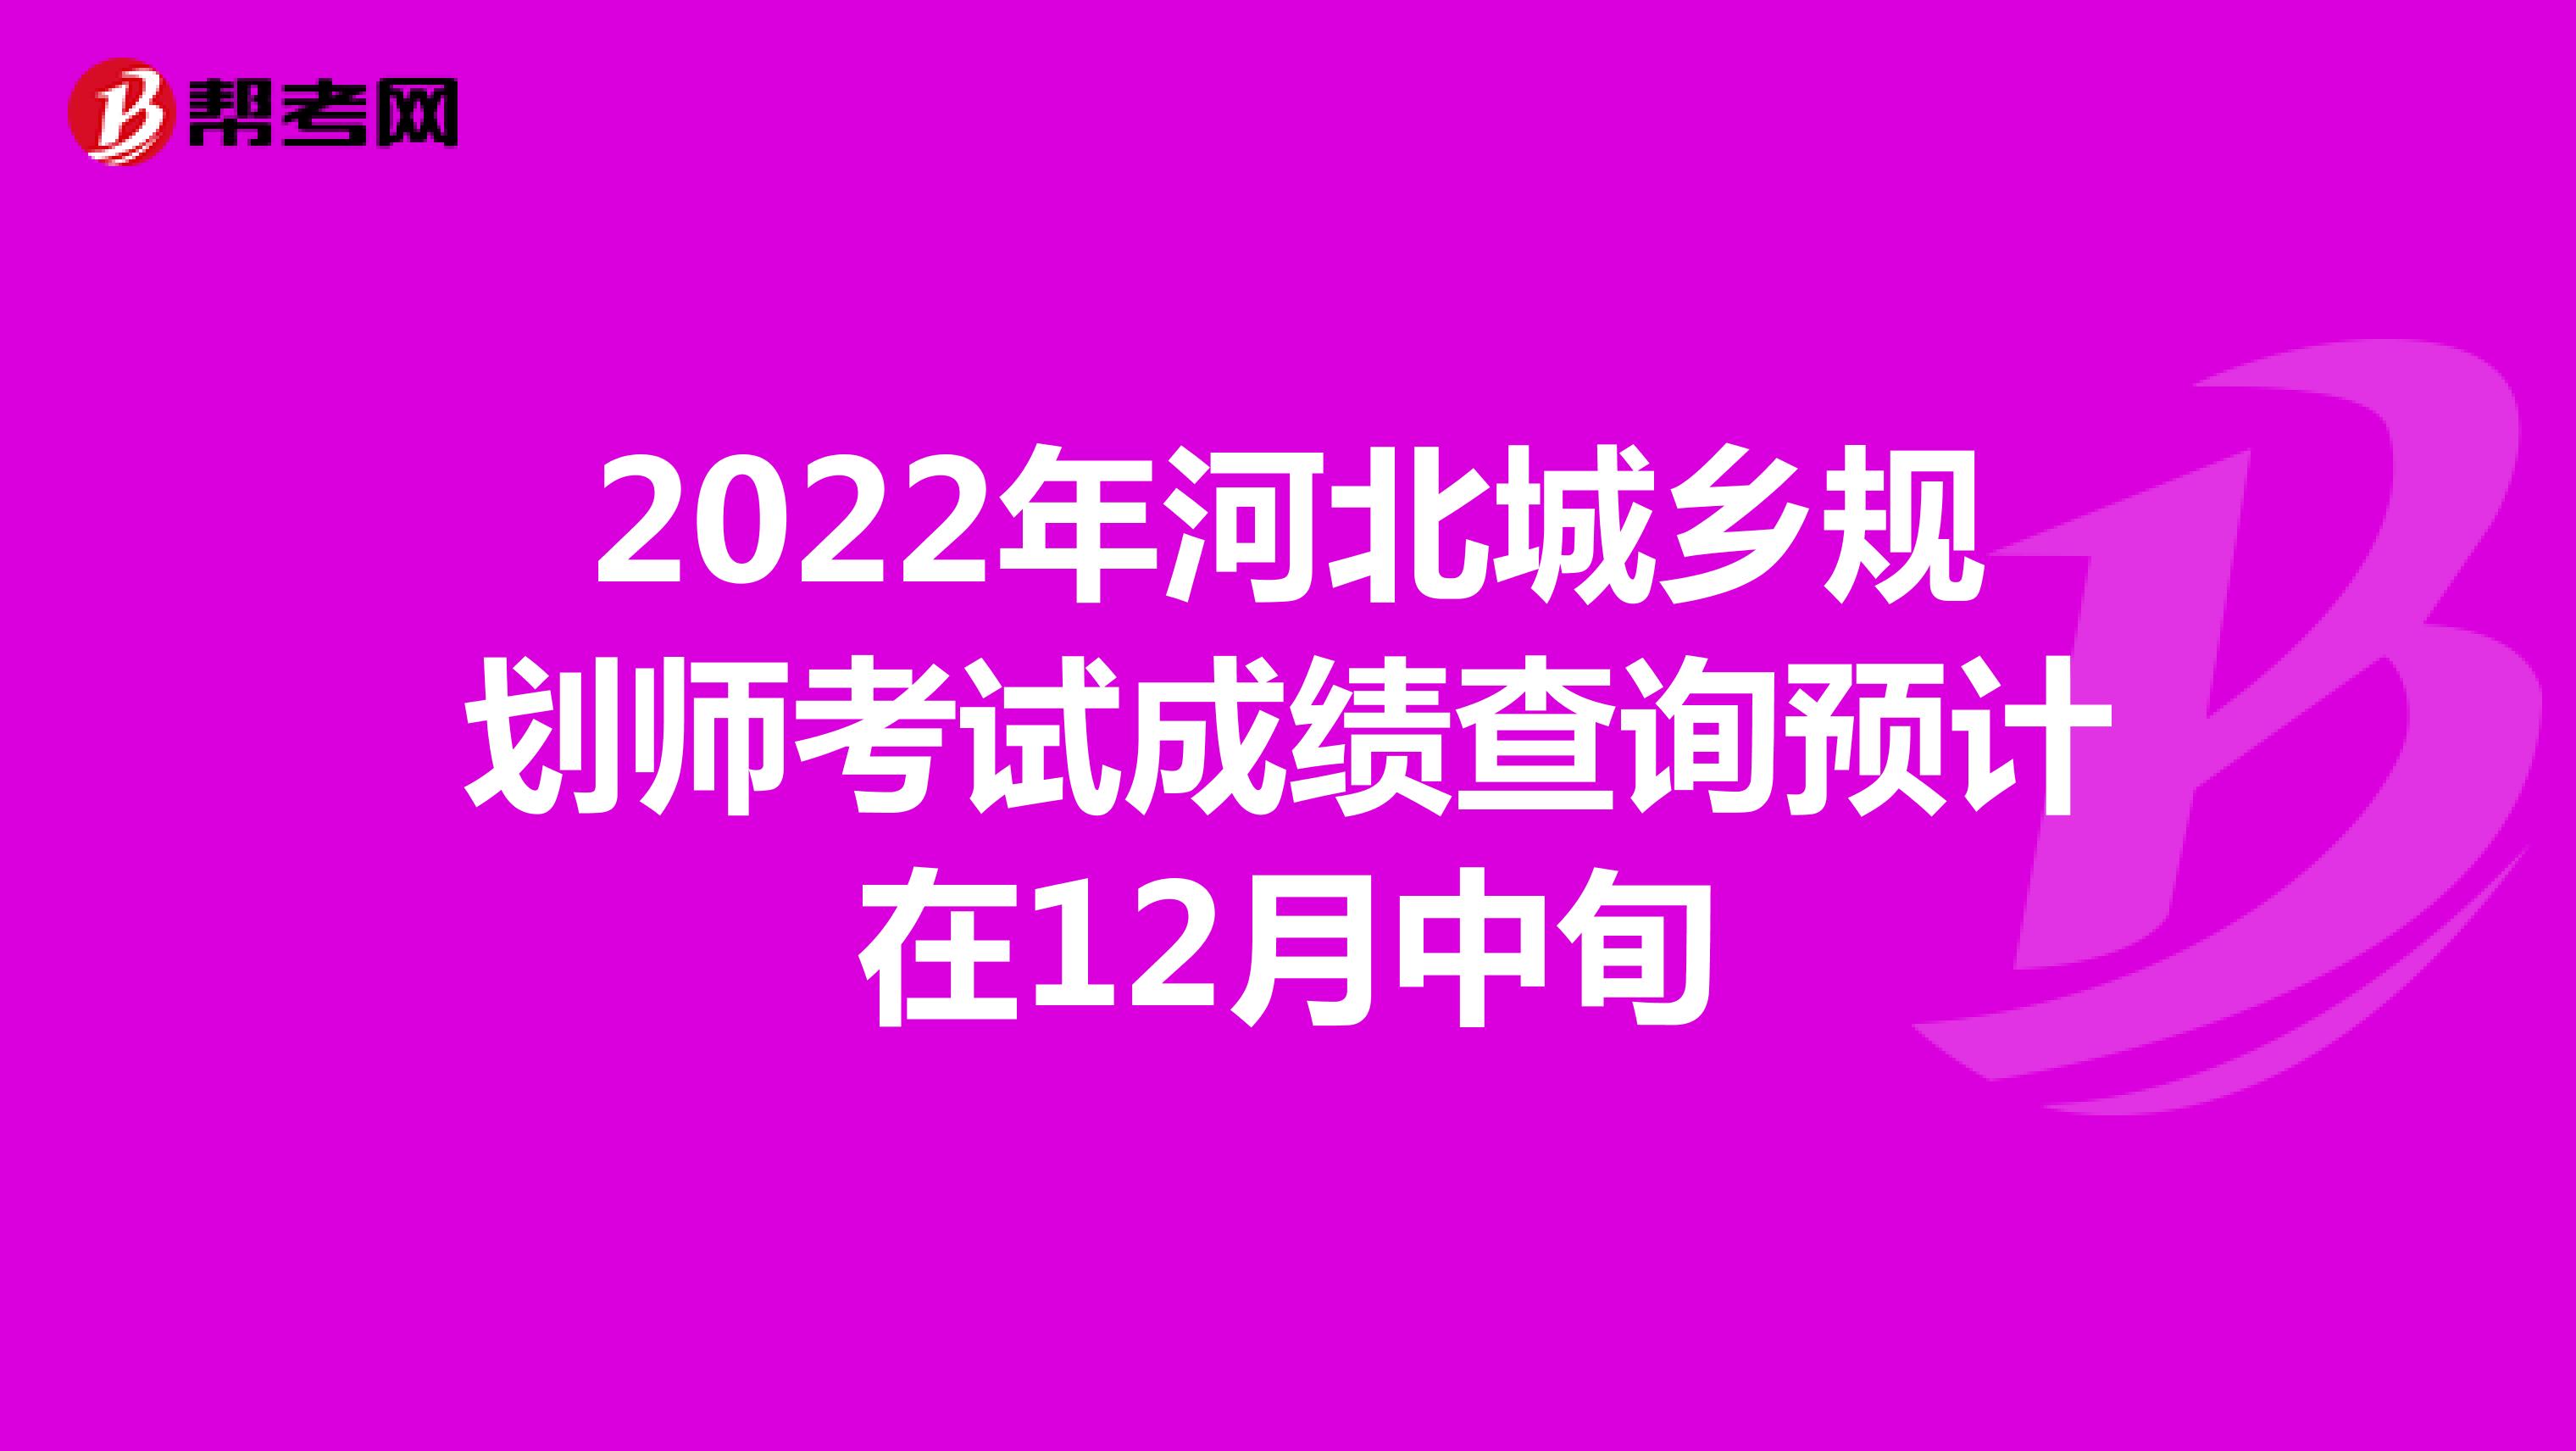 2022年河北城乡规划师考试成绩查询预计在12月中旬